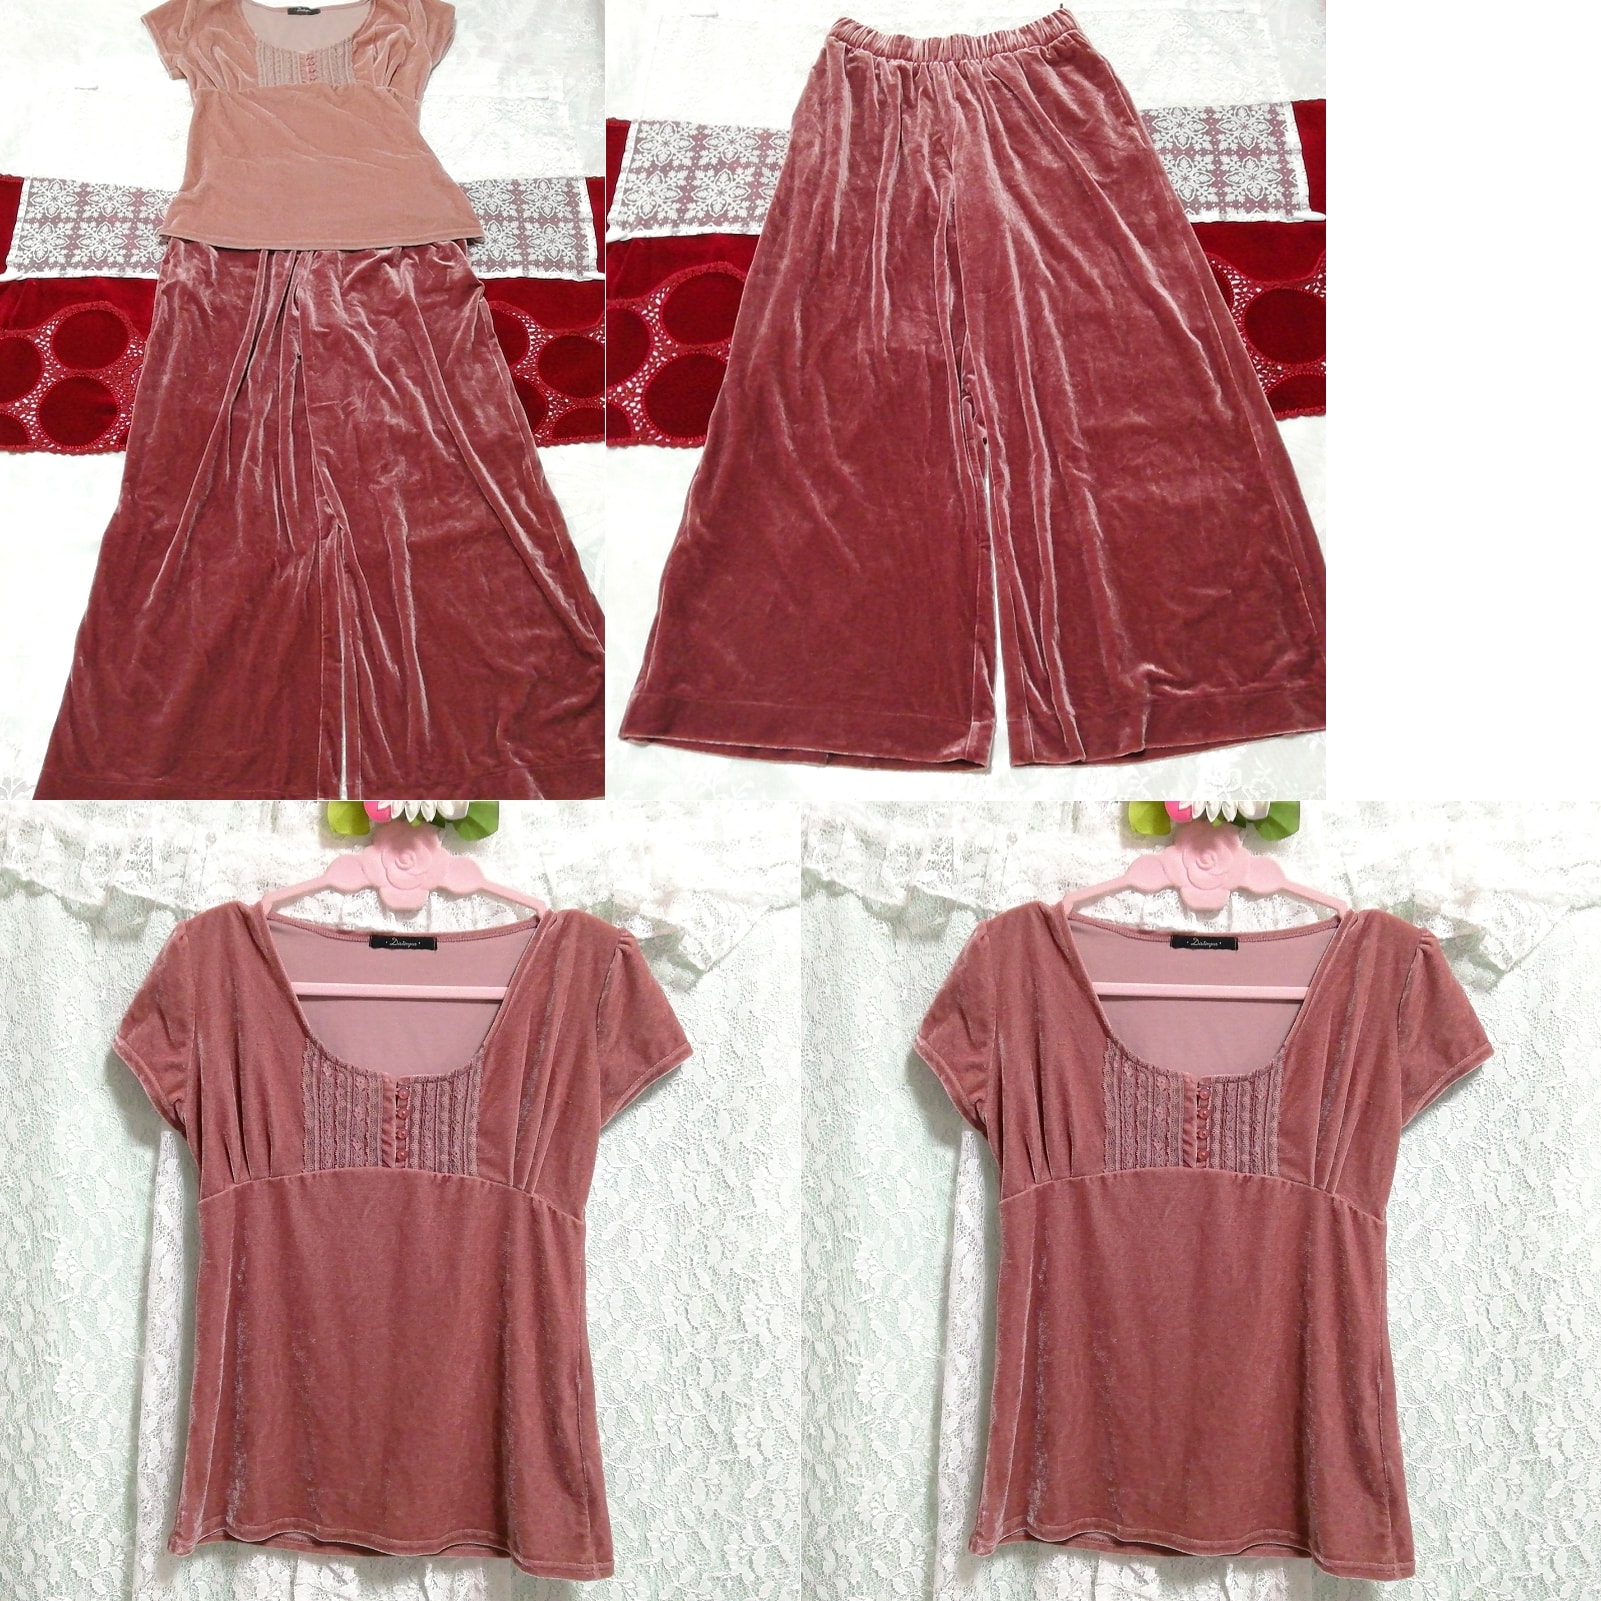 Tunique rose à manches courtes, chemise de nuit négligée, jupe en velours rouge rose 2P, mode, mode féminine, vêtement de nuit, pyjamas